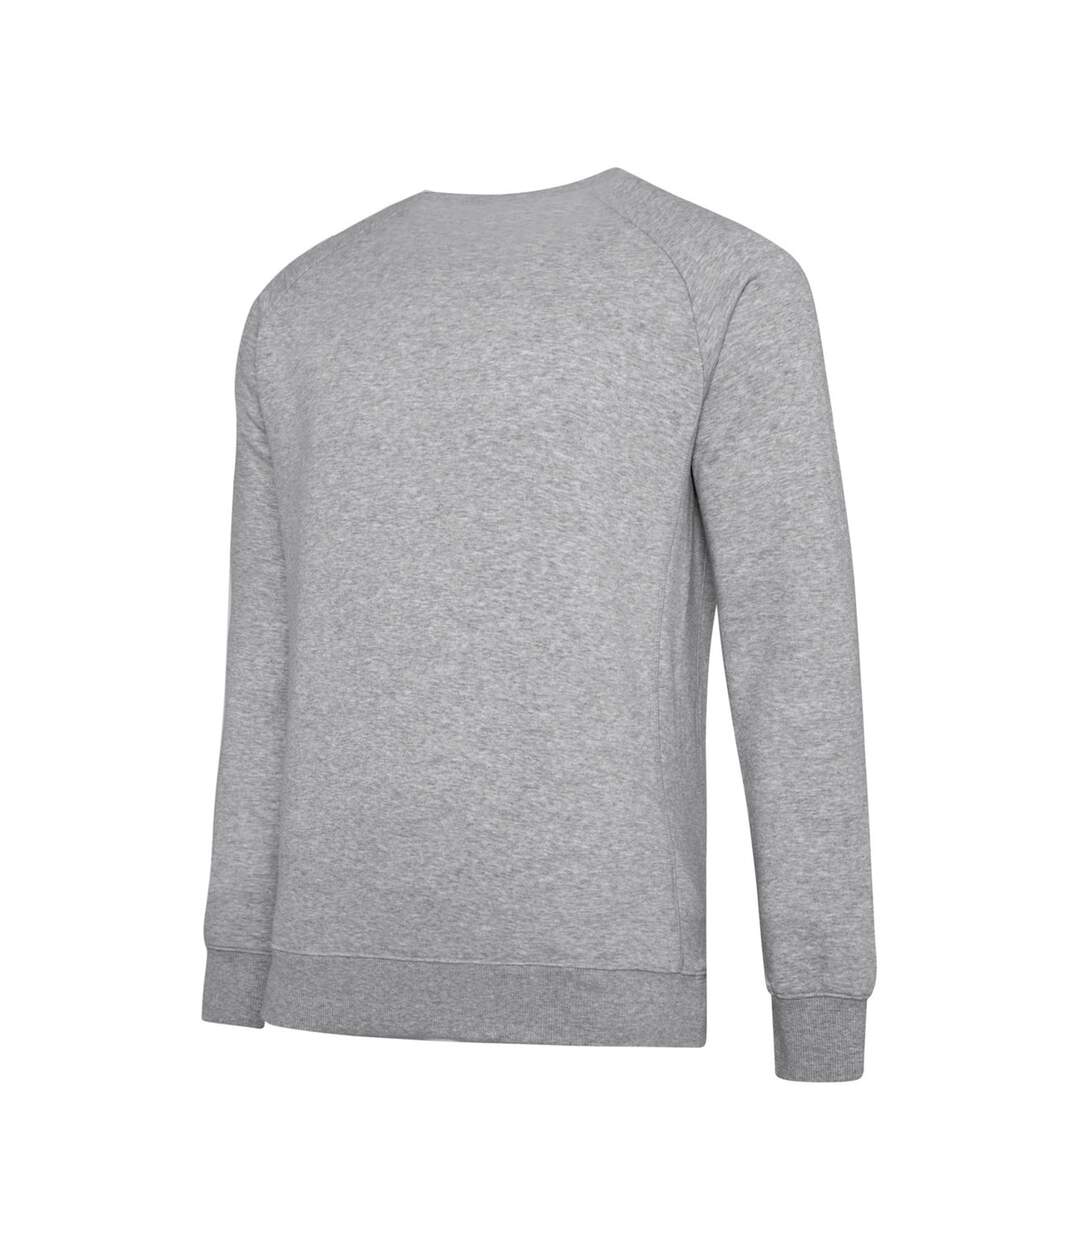 Umbro Mens Club Leisure Sweatshirt (Grey Marl/White)